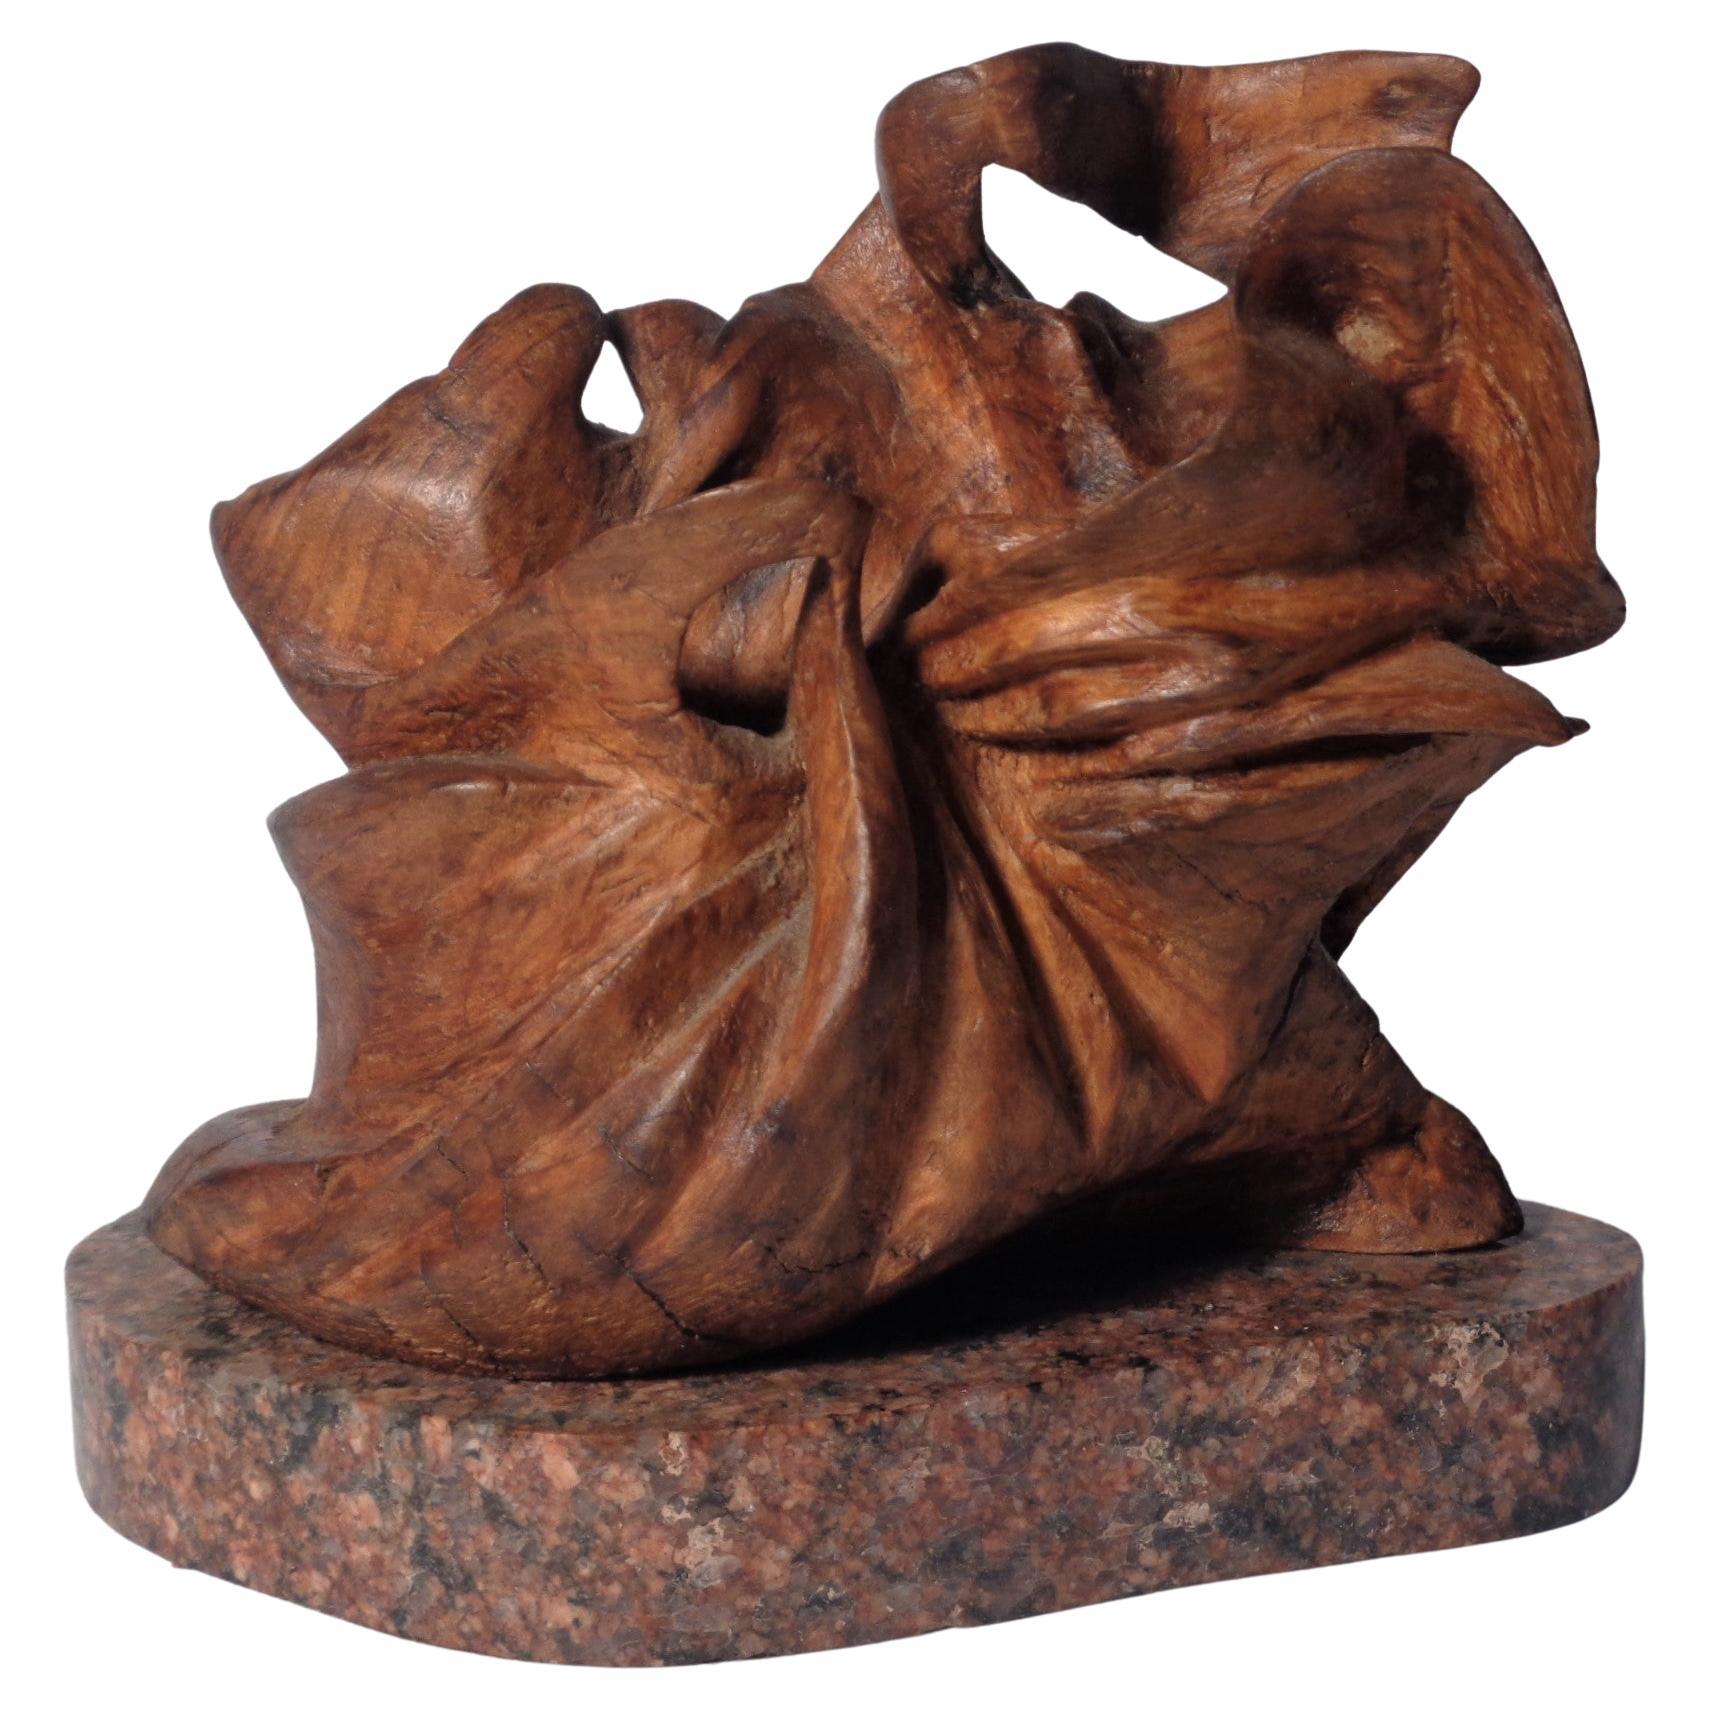   Sculpture naturaliste en bois sculpté de W.C. Rubottom, 1960-1979